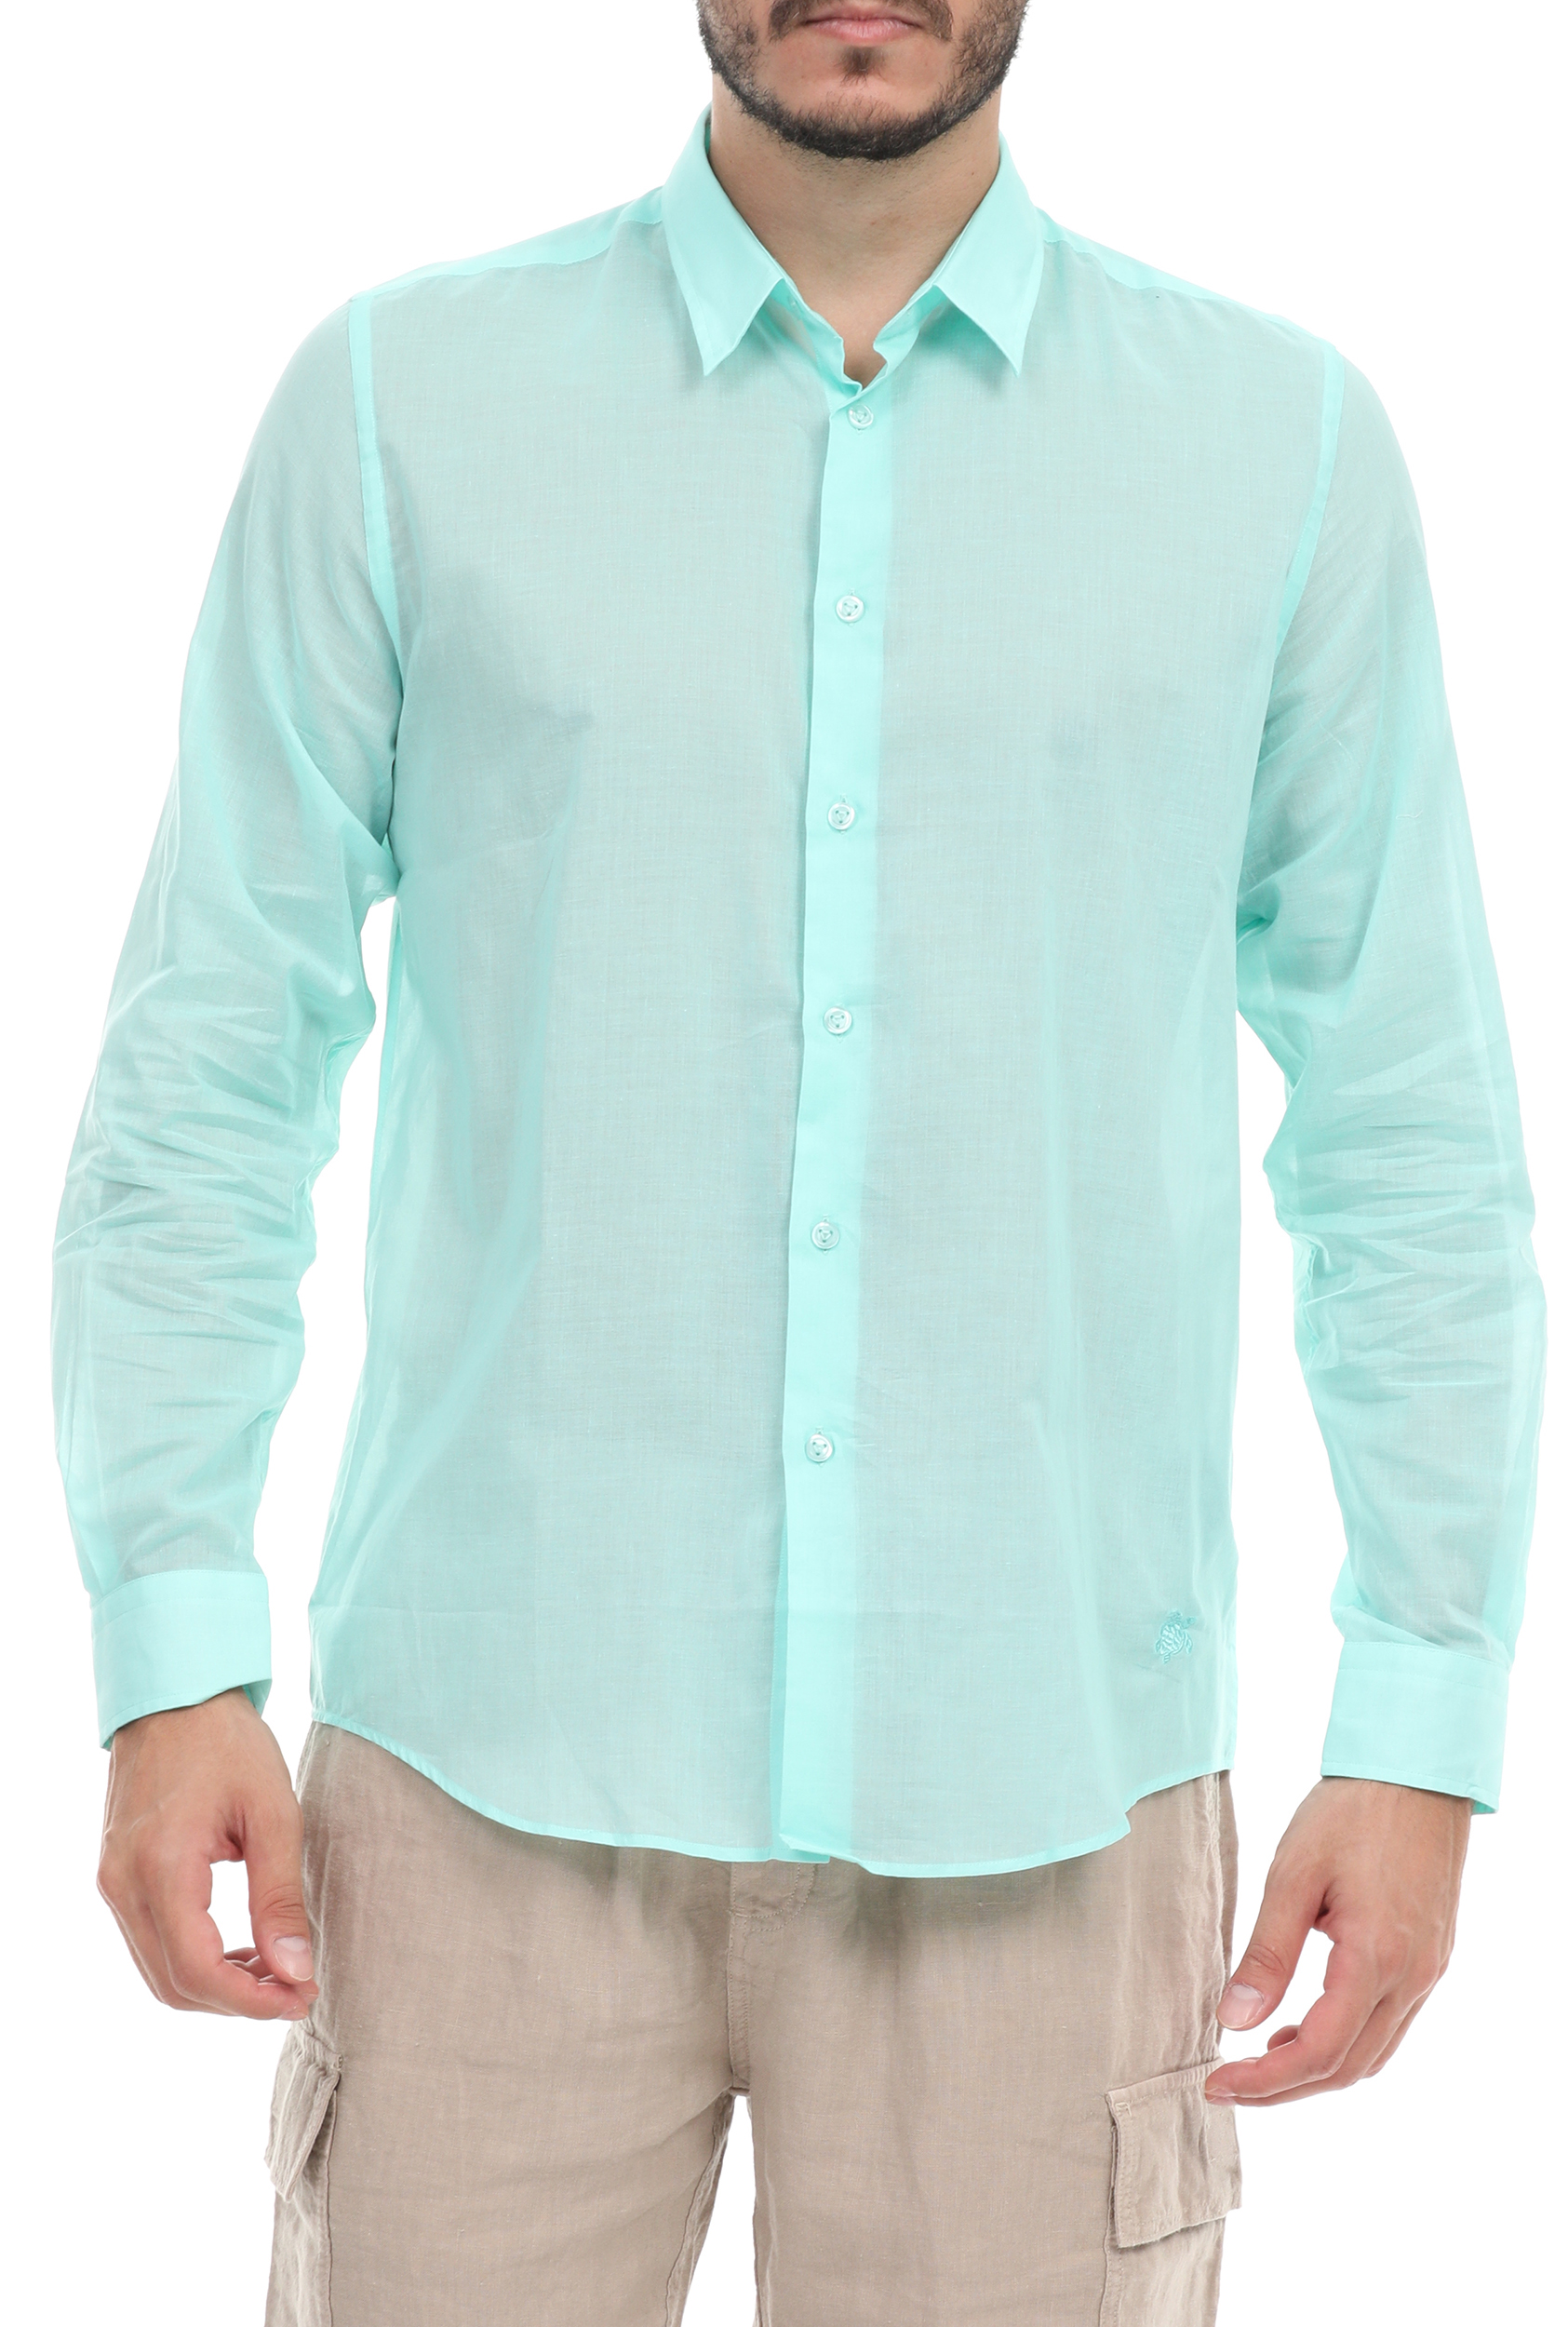 Ανδρικά/Ρούχα/Πουκάμισα/Μακρυμάνικα VILEBREQUIN - Ανδρικό πουκάμισο VILEBREQUIN CARACAL μπλε